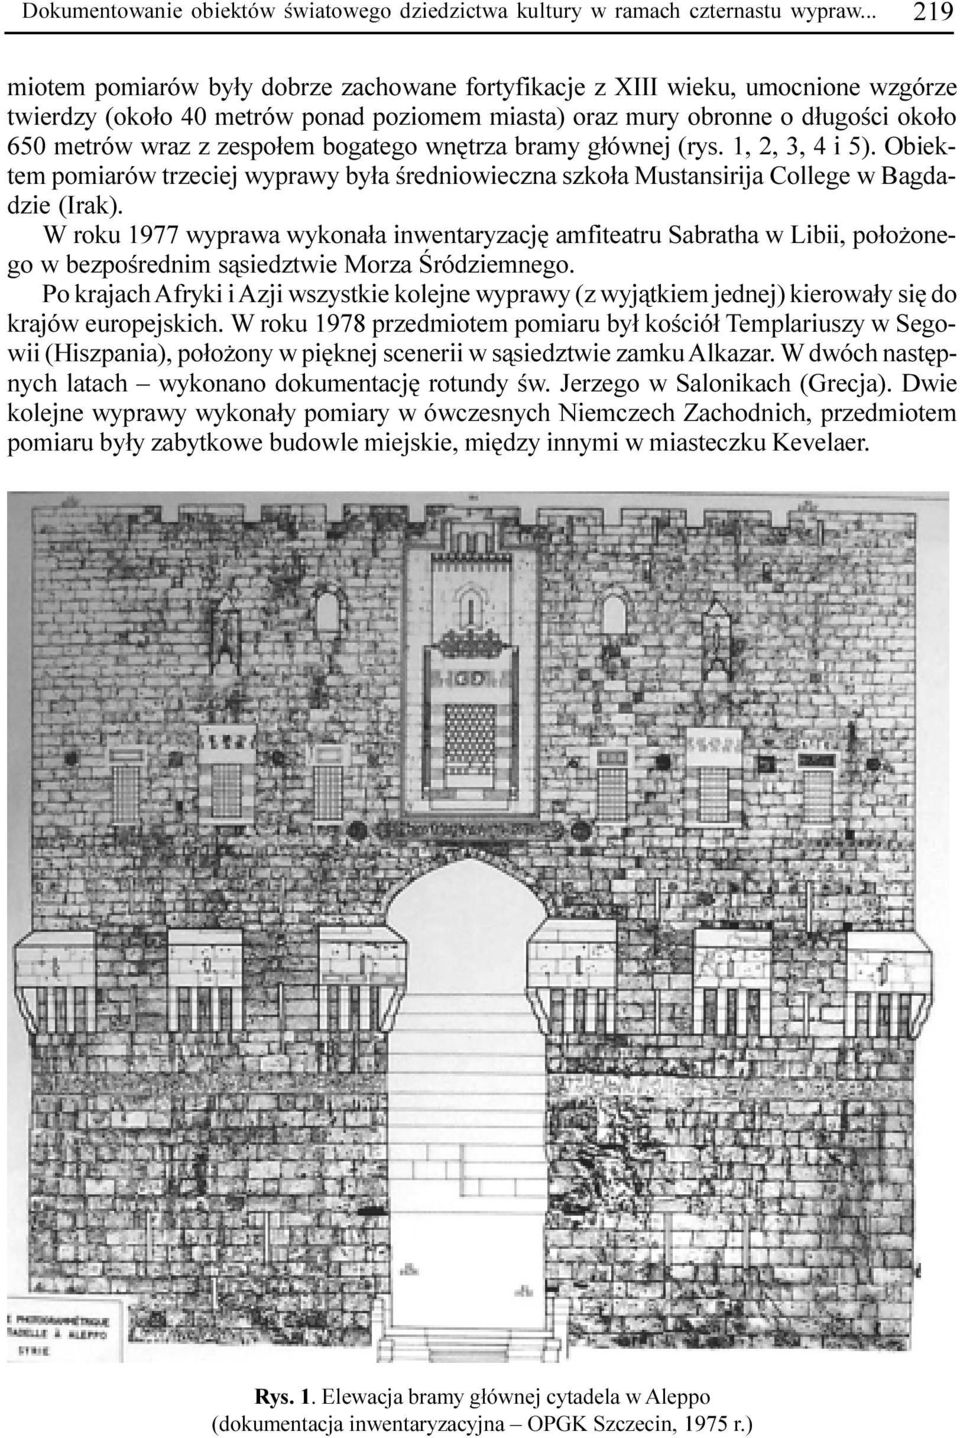 zespo³em bogatego wnêtrza bramy g³ównej (rys. 1, 2, 3, 4 i 5). Obiektem pomiarów trzeciej wyprawy by³a œredniowieczna szko³a Mustansirija College w Bagdadzie (Irak).